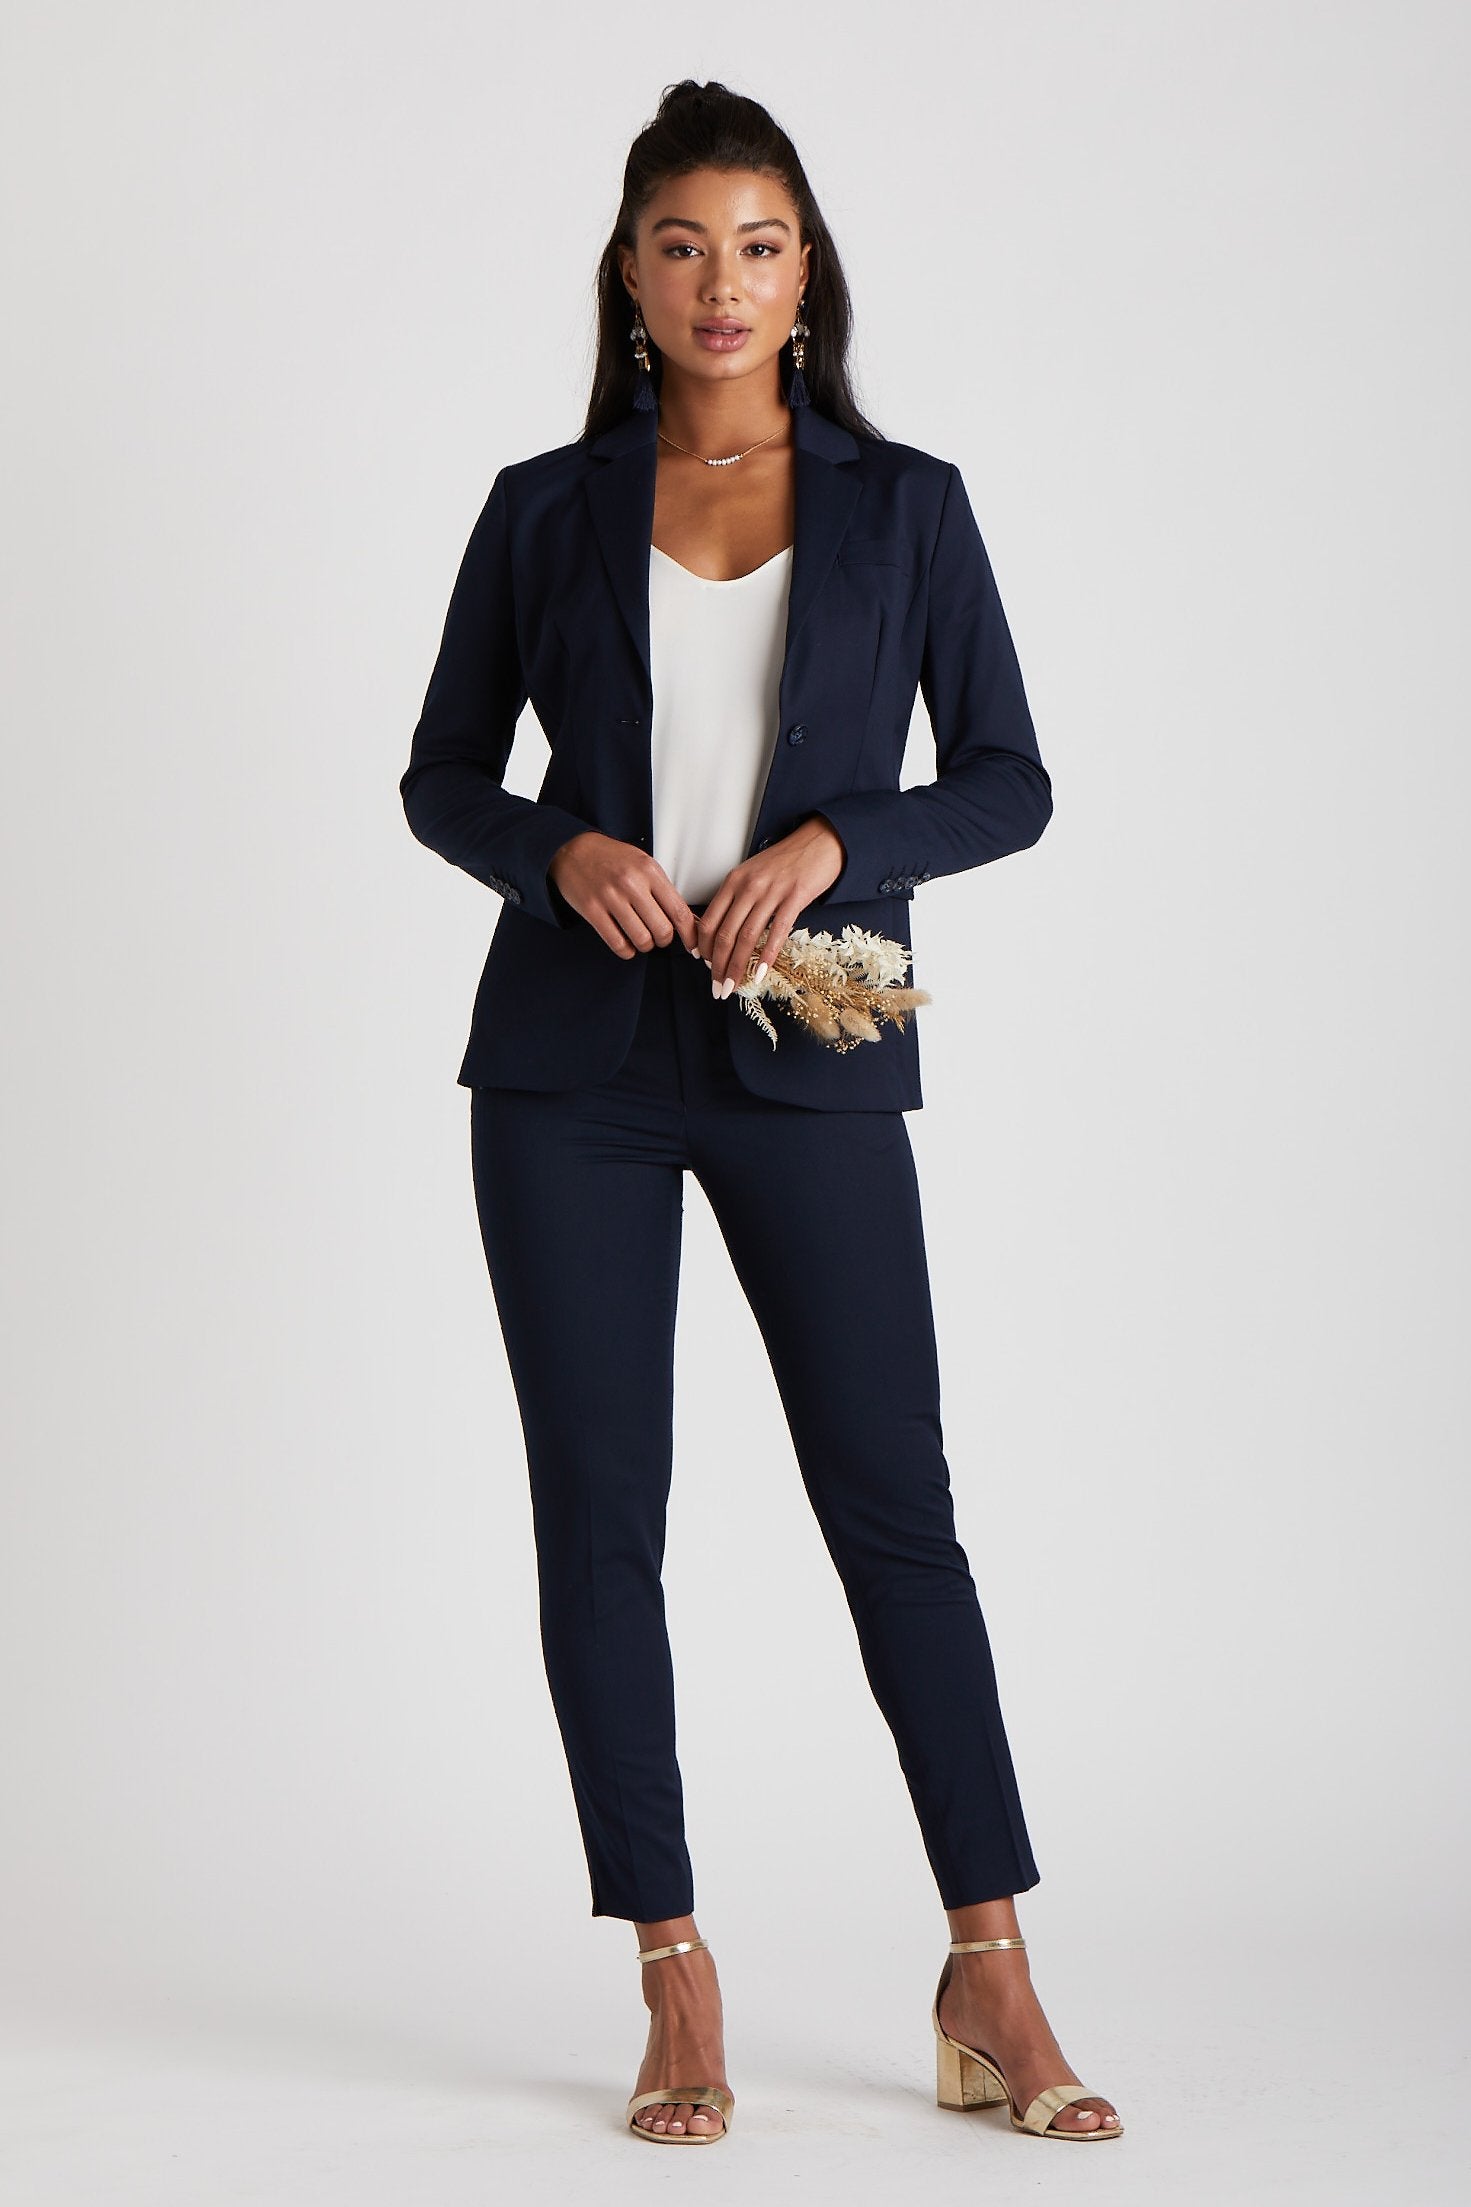 Women tuxedo/suits  Pantsuits for women, Suits for women, Pants for women